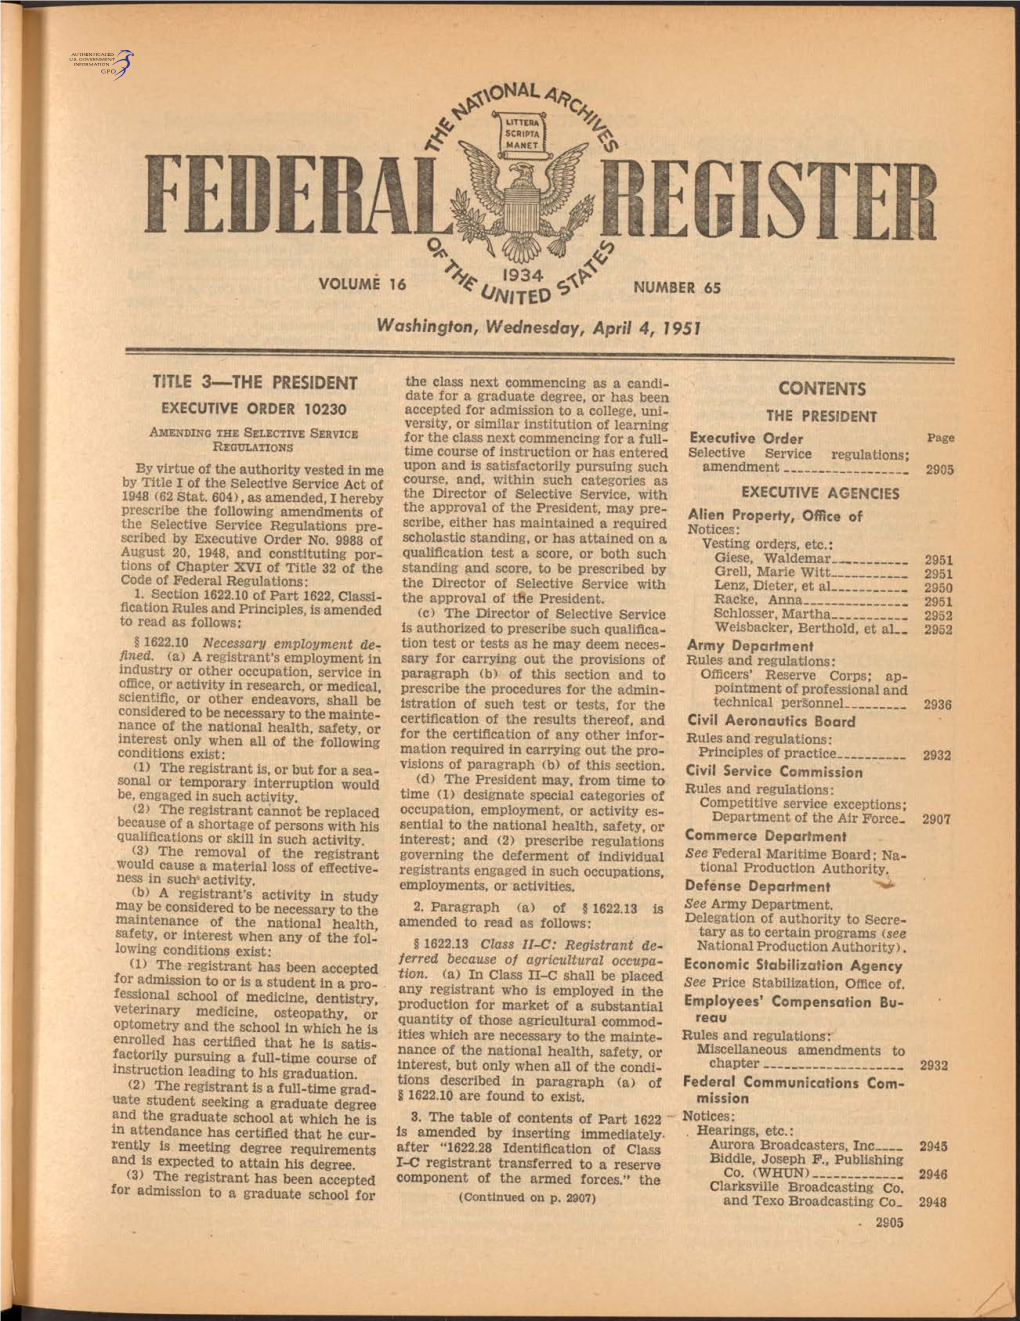 Washington, Wednesday, April 4, 1951 TITLE 3—THE PRESIDENT